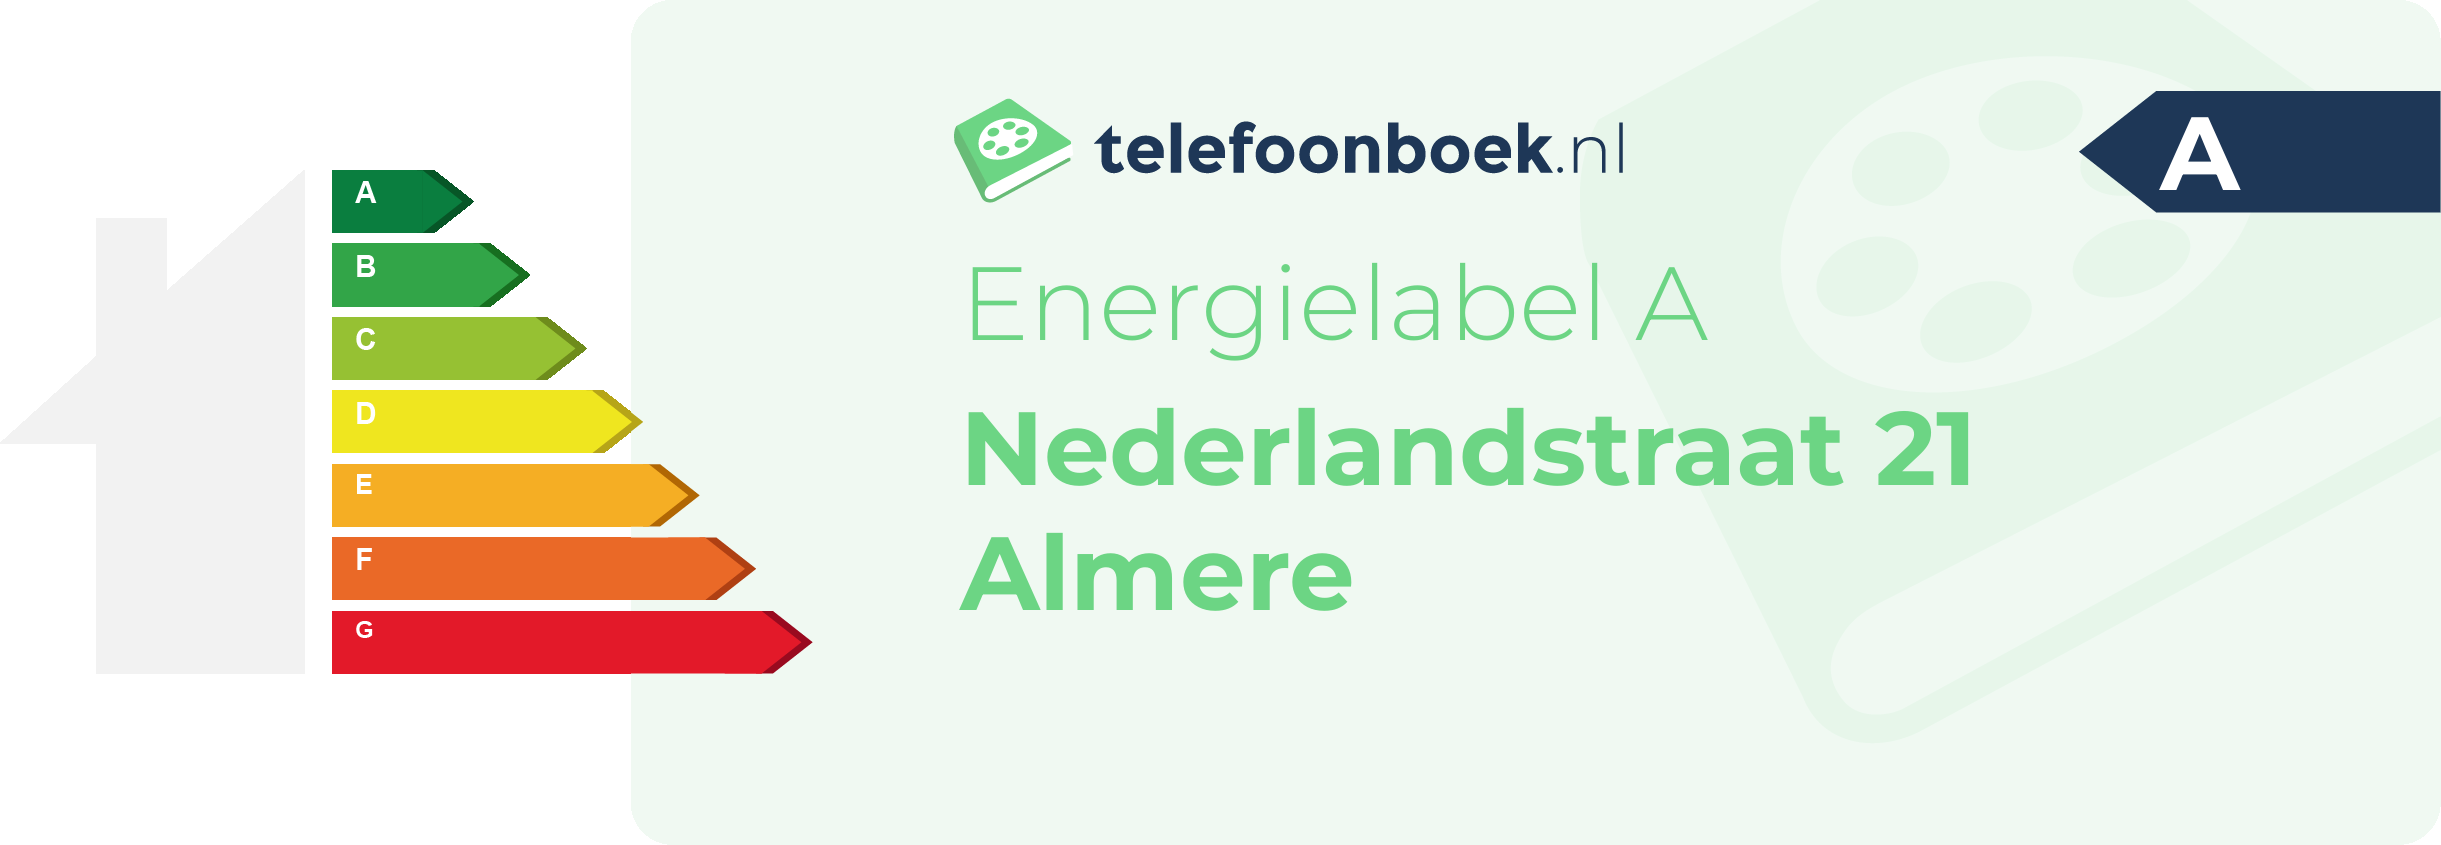 Energielabel Nederlandstraat 21 Almere